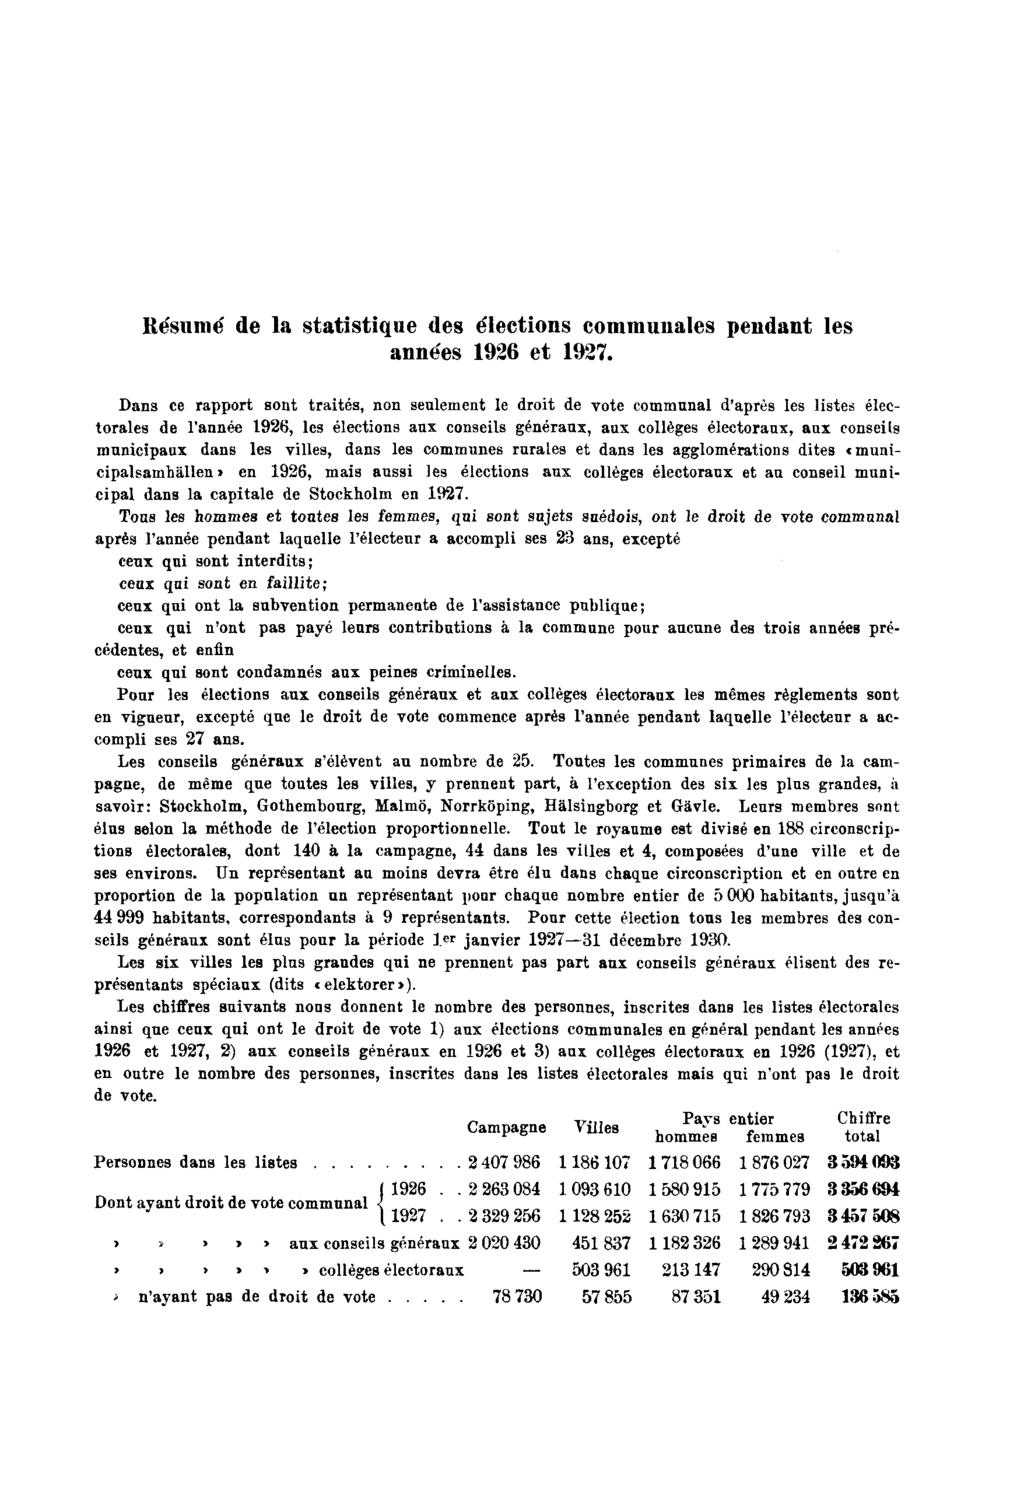 Résumé de la statistique des élections communales pendant les années 1926 et 1927.